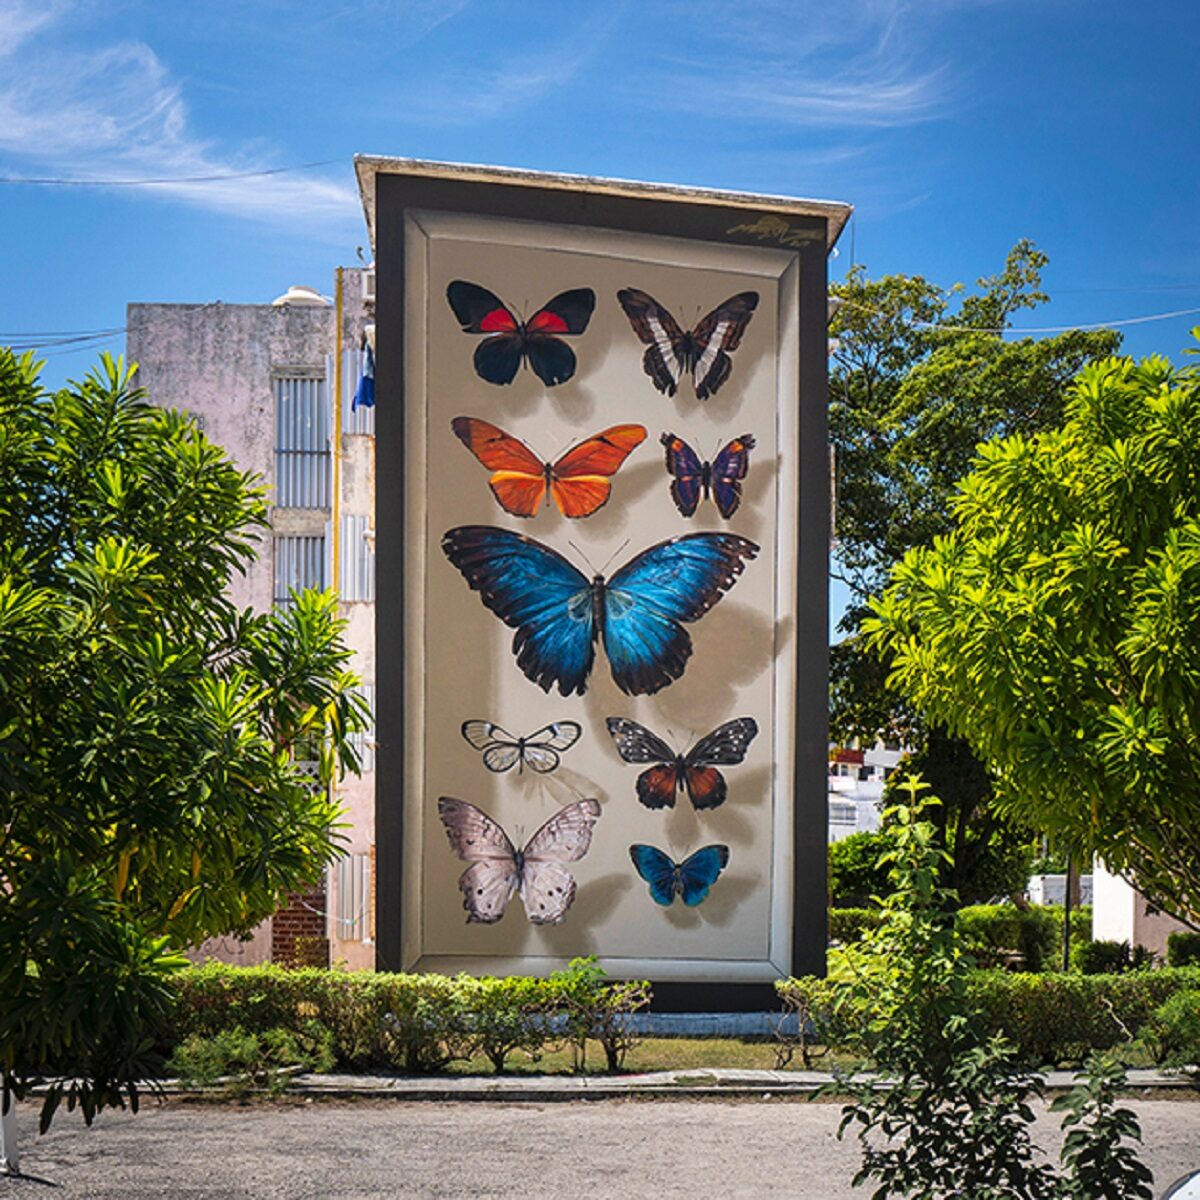 Mantra artista desenha borboletas em paredes de diversas cidades pelo mundo 10